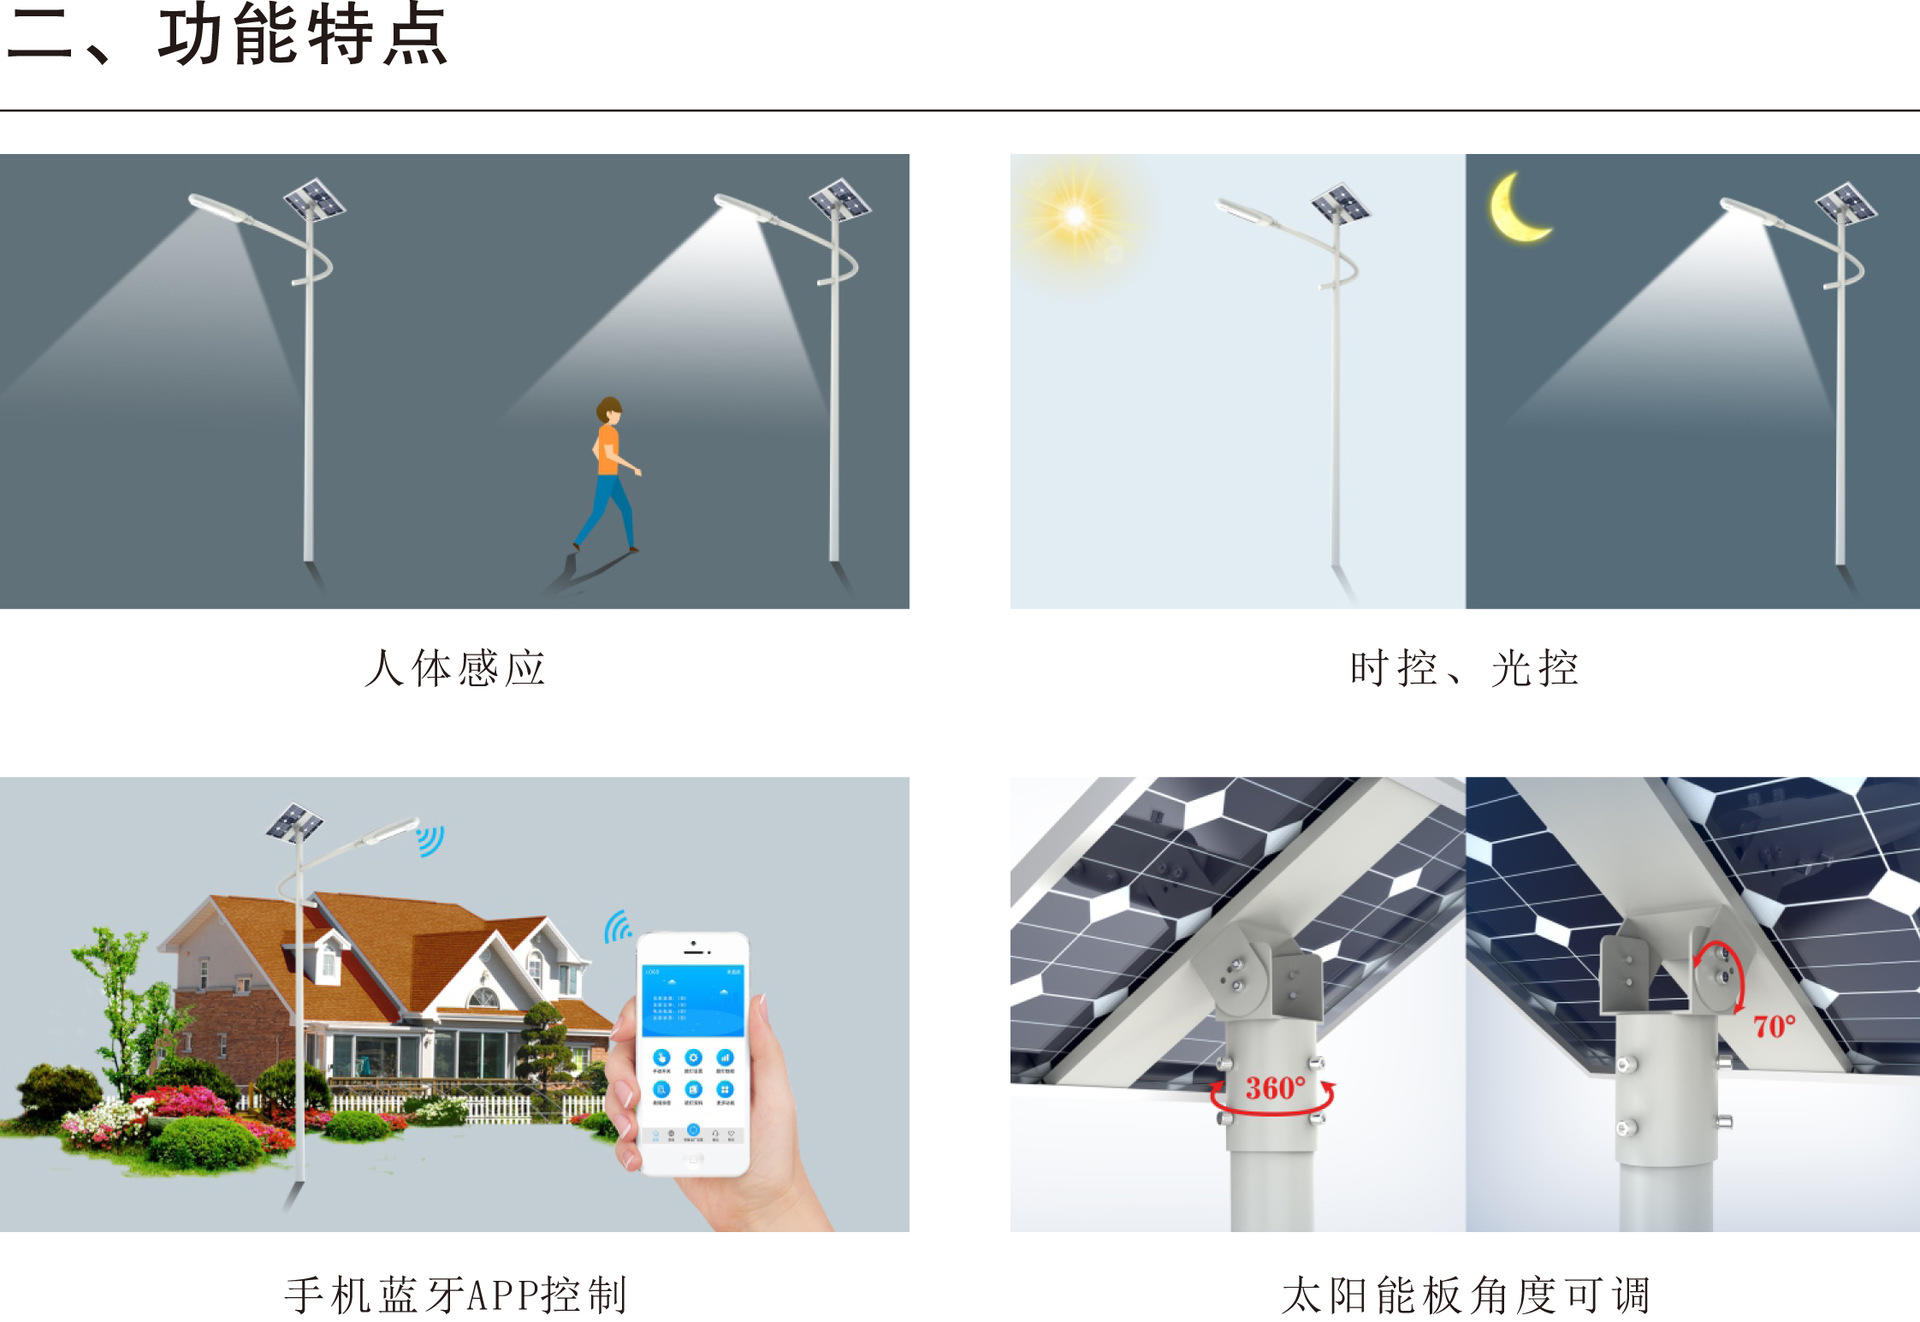 江苏北极光太阳能LED灯生产厂家  手机APP控制太阳能分体路灯  太阳能路灯示例图5